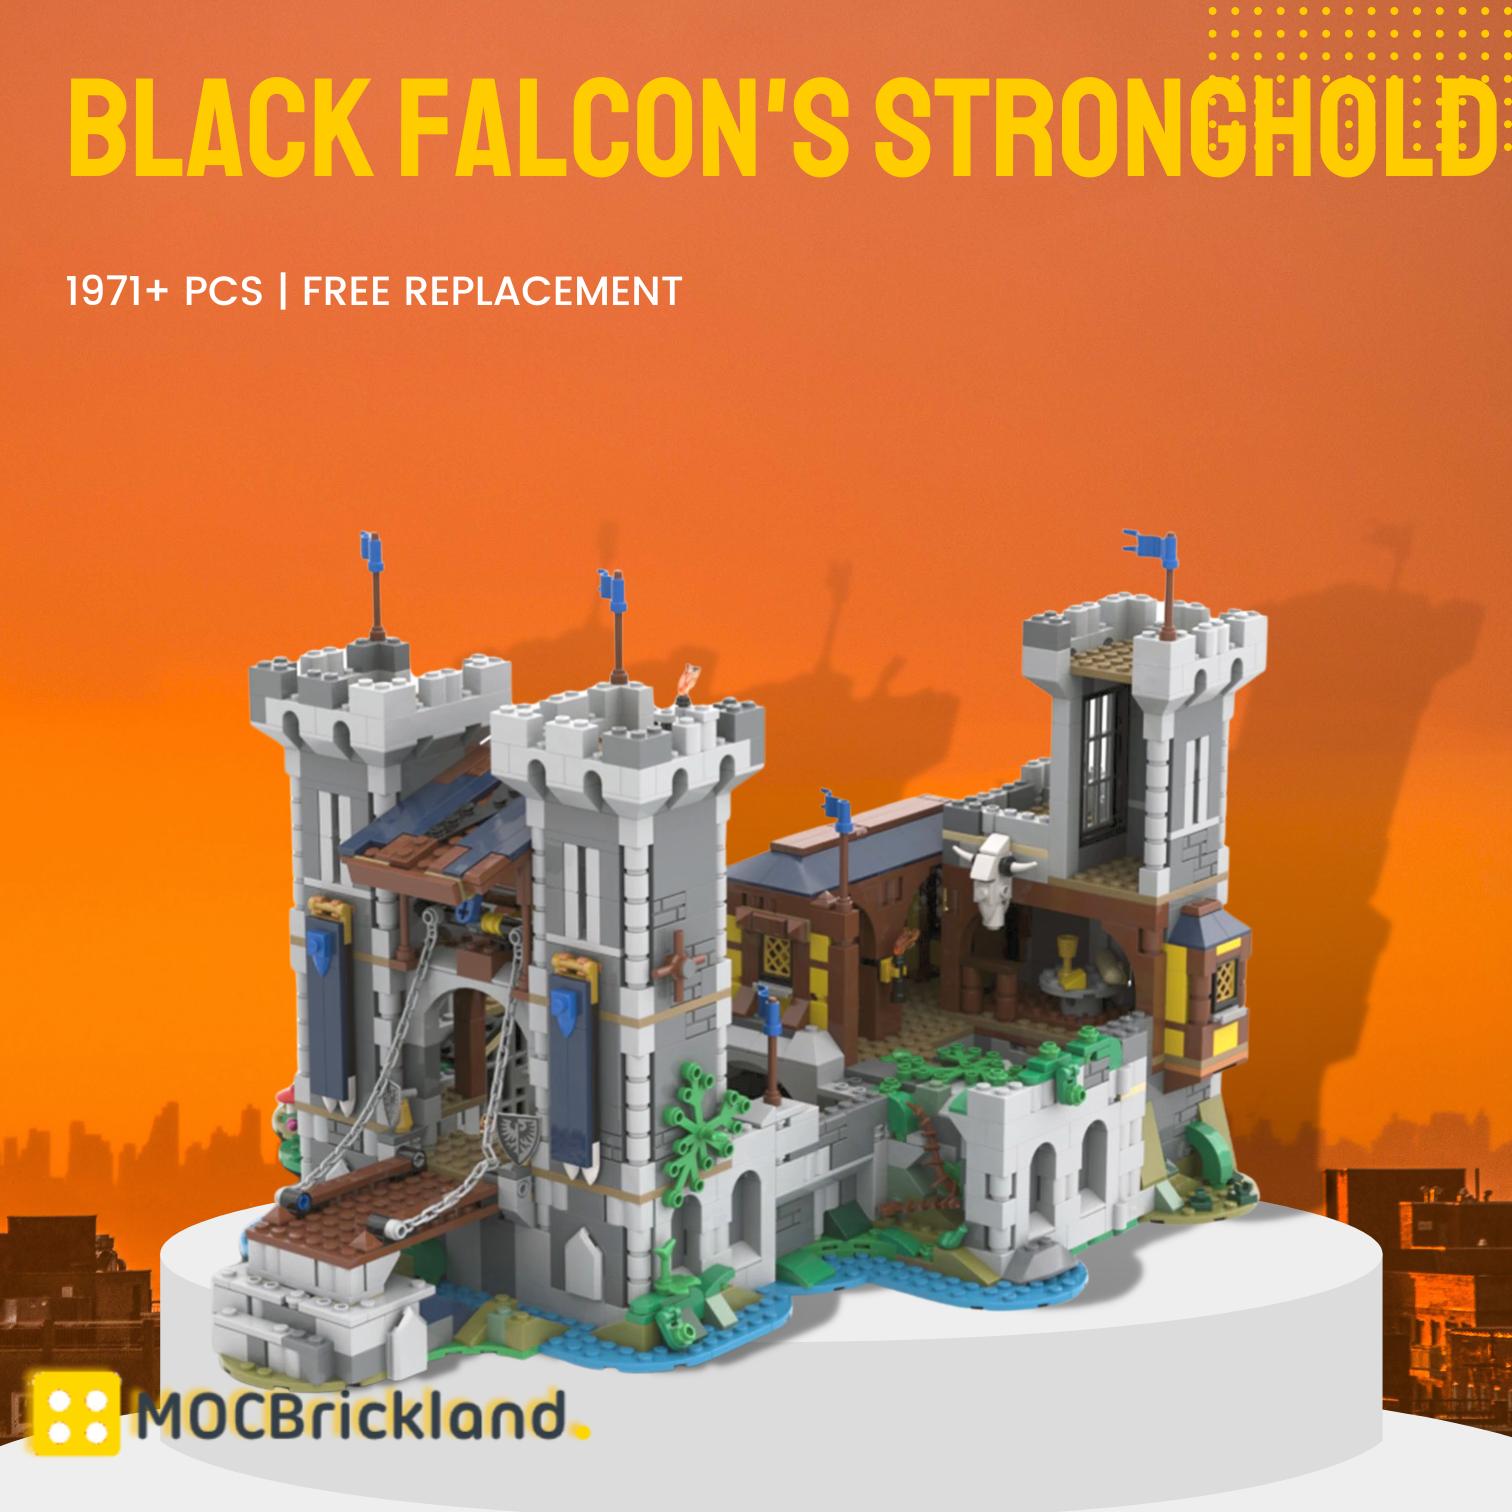 MOCBRICKLAND MOC-116798 Black Falcon’s Stronghold (BUNDLE) 31120-1 Alt. Build